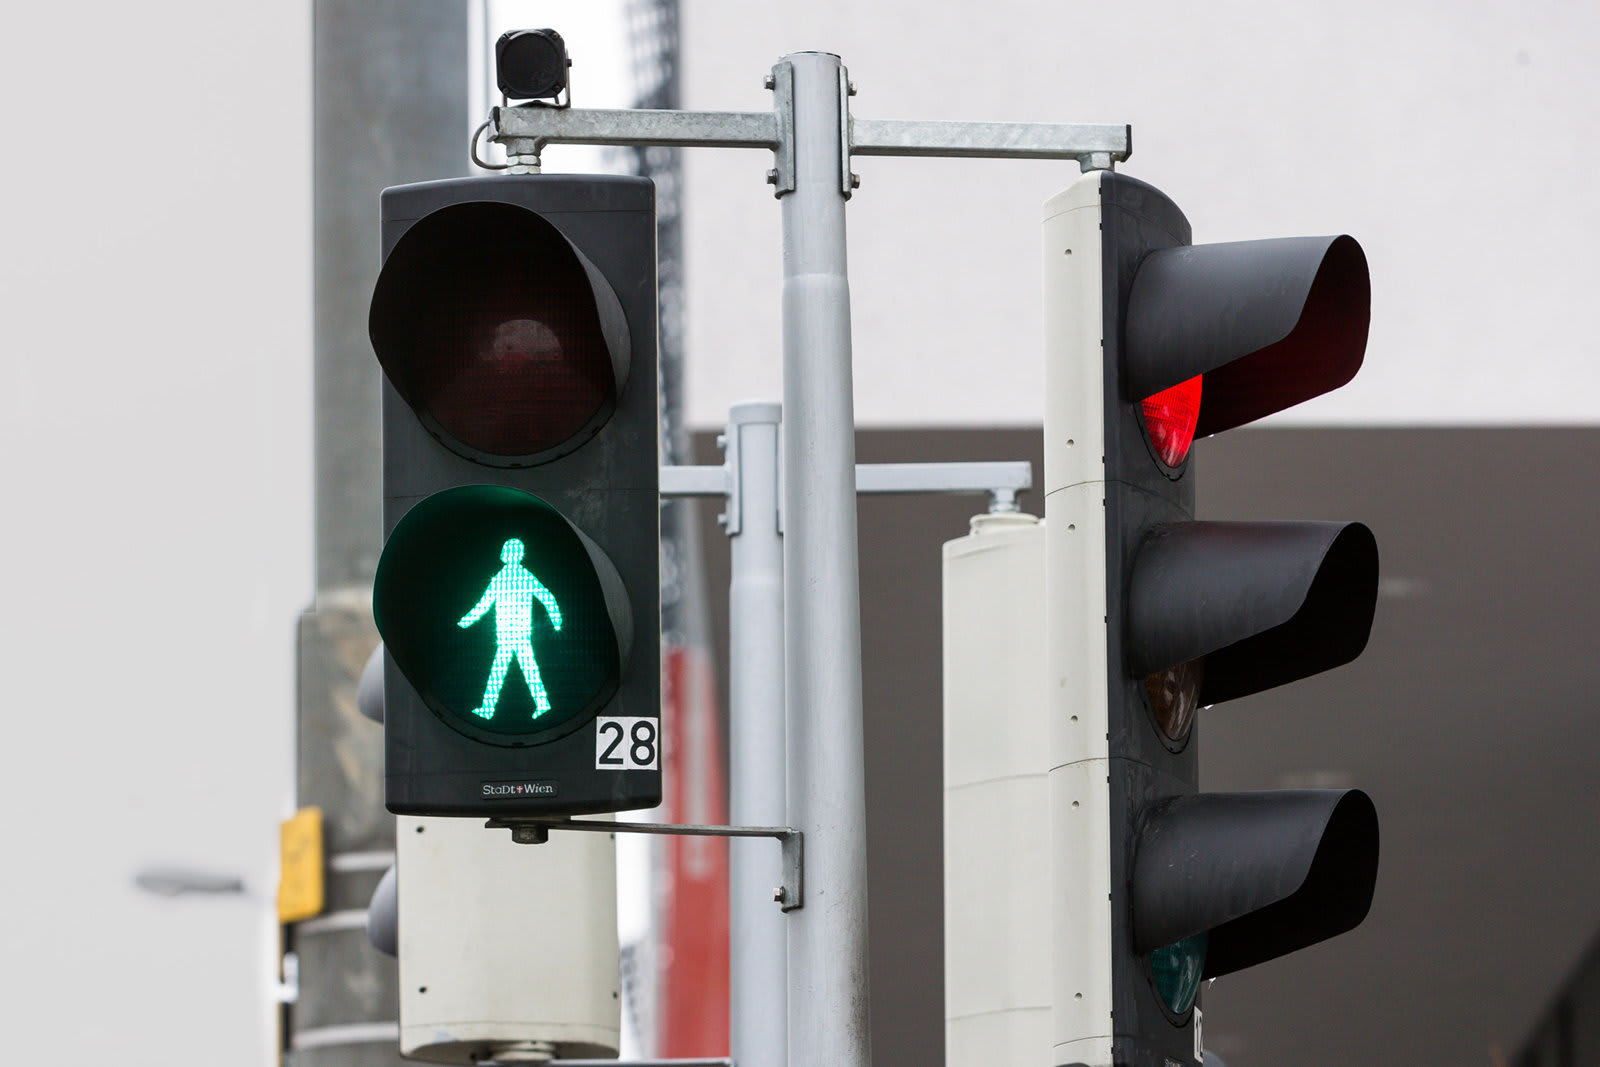 横断したい歩行者を認識するカメラ搭載信号システム オーストリアで開発 Engadget 日本版